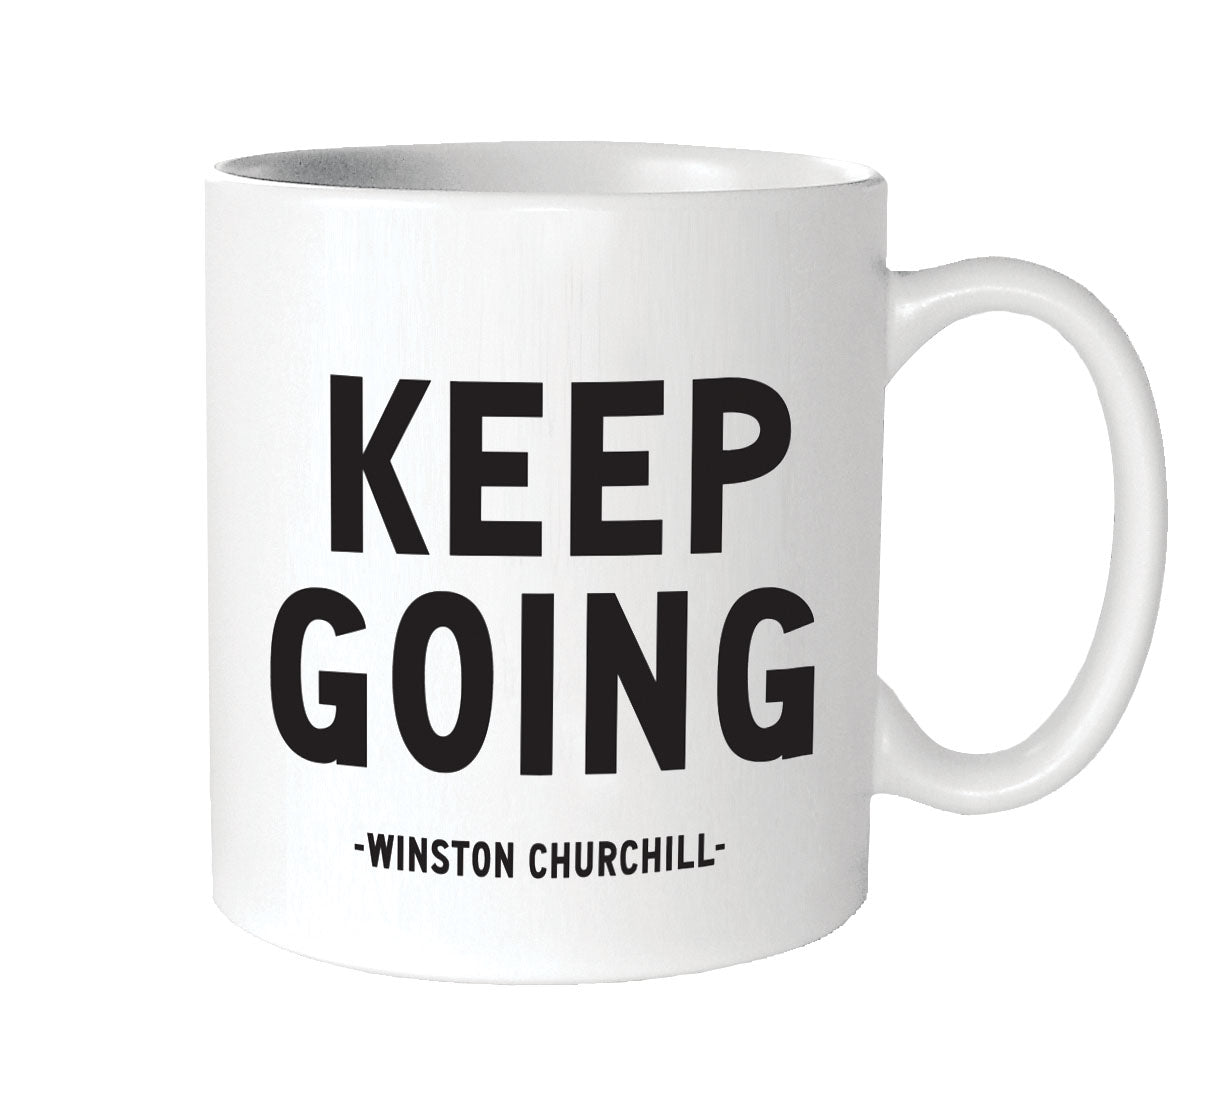 "Keep Going" Mug